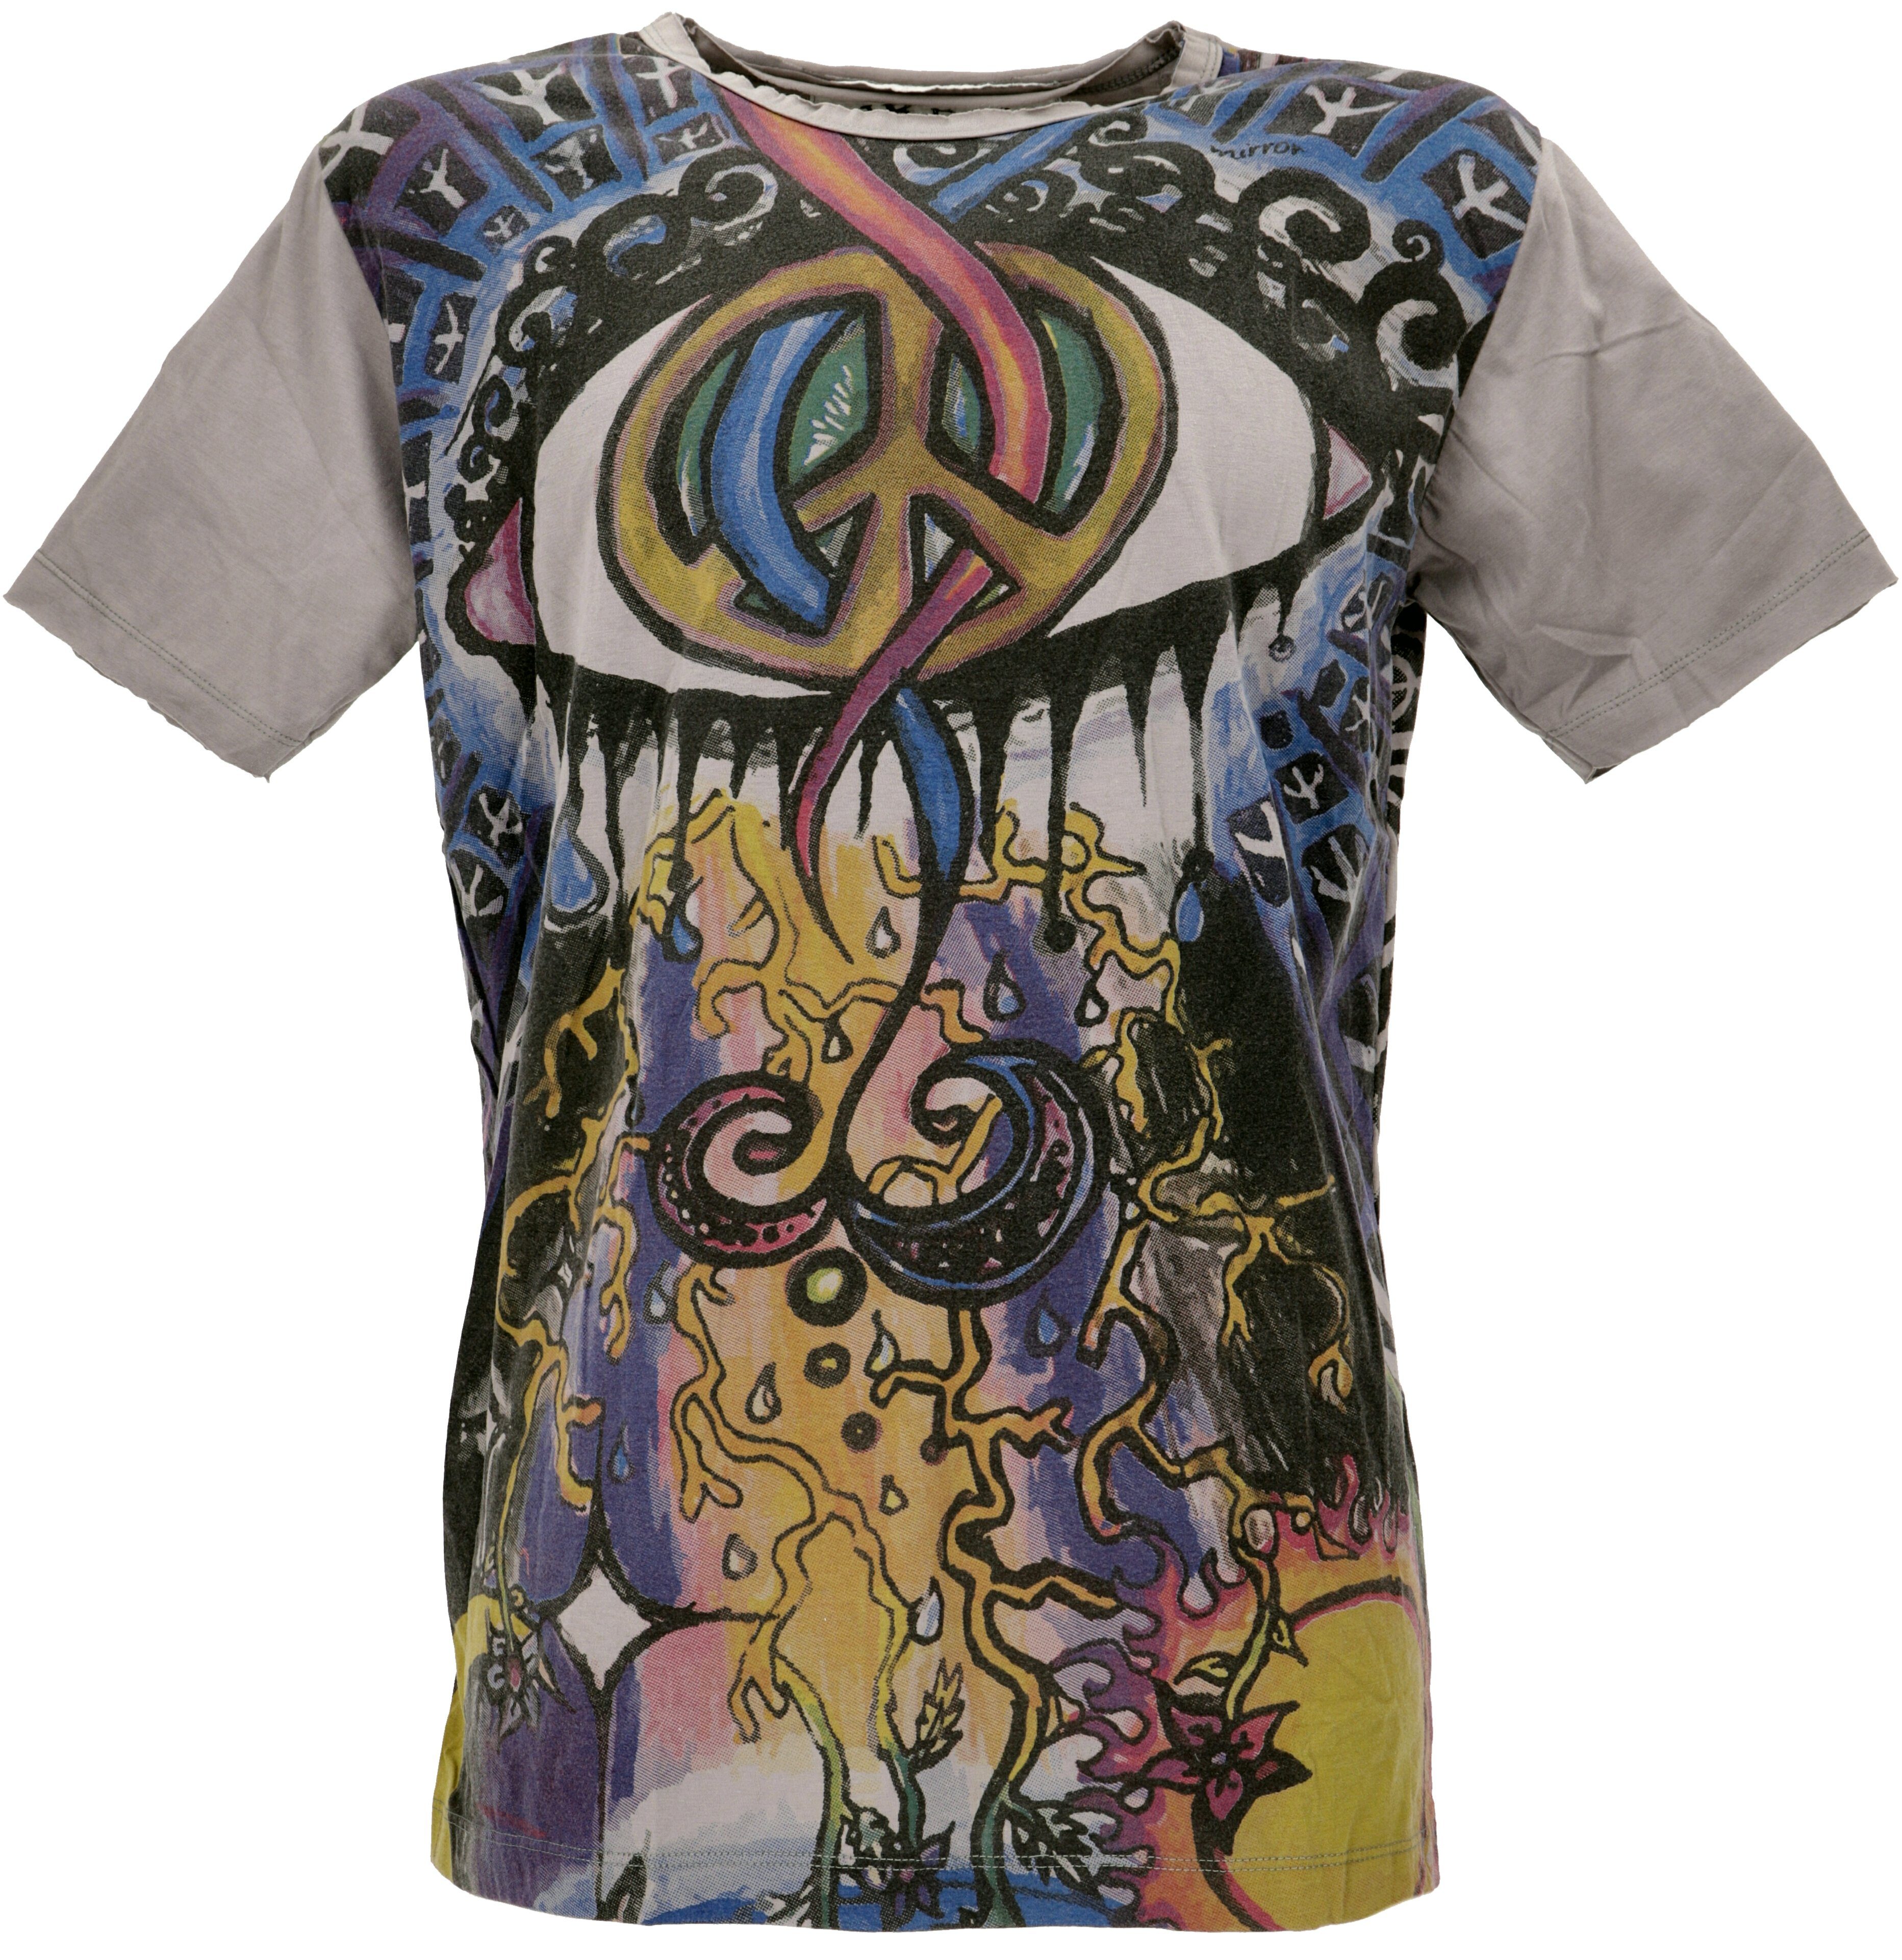 Guru-Shop T-Shirt Mirror T-Shirt grau alternative Goa Style, Festival, Bekleidung / Peace grau - Peace